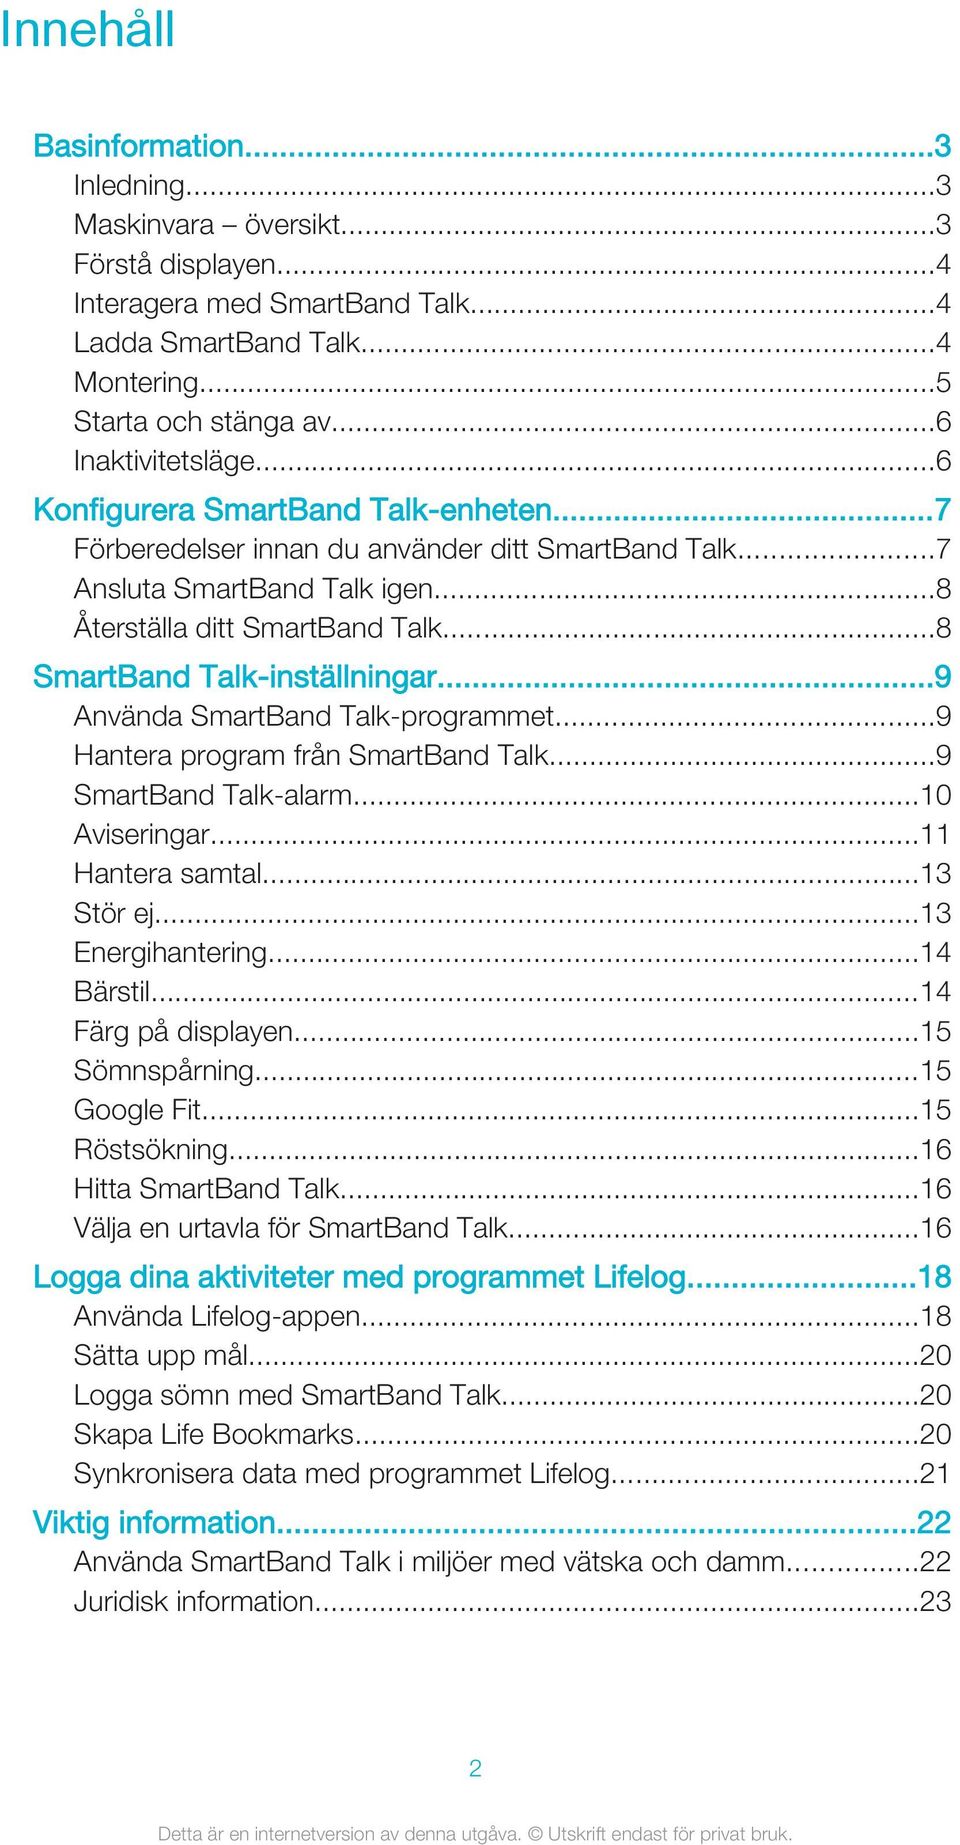 ..9 Använda SmartBand Talk-programmet...9 Hantera program från SmartBand Talk...9 SmartBand Talk-alarm...10 Aviseringar...11 Hantera samtal...13 Stör ej...13 Energihantering...14 Bärstil.